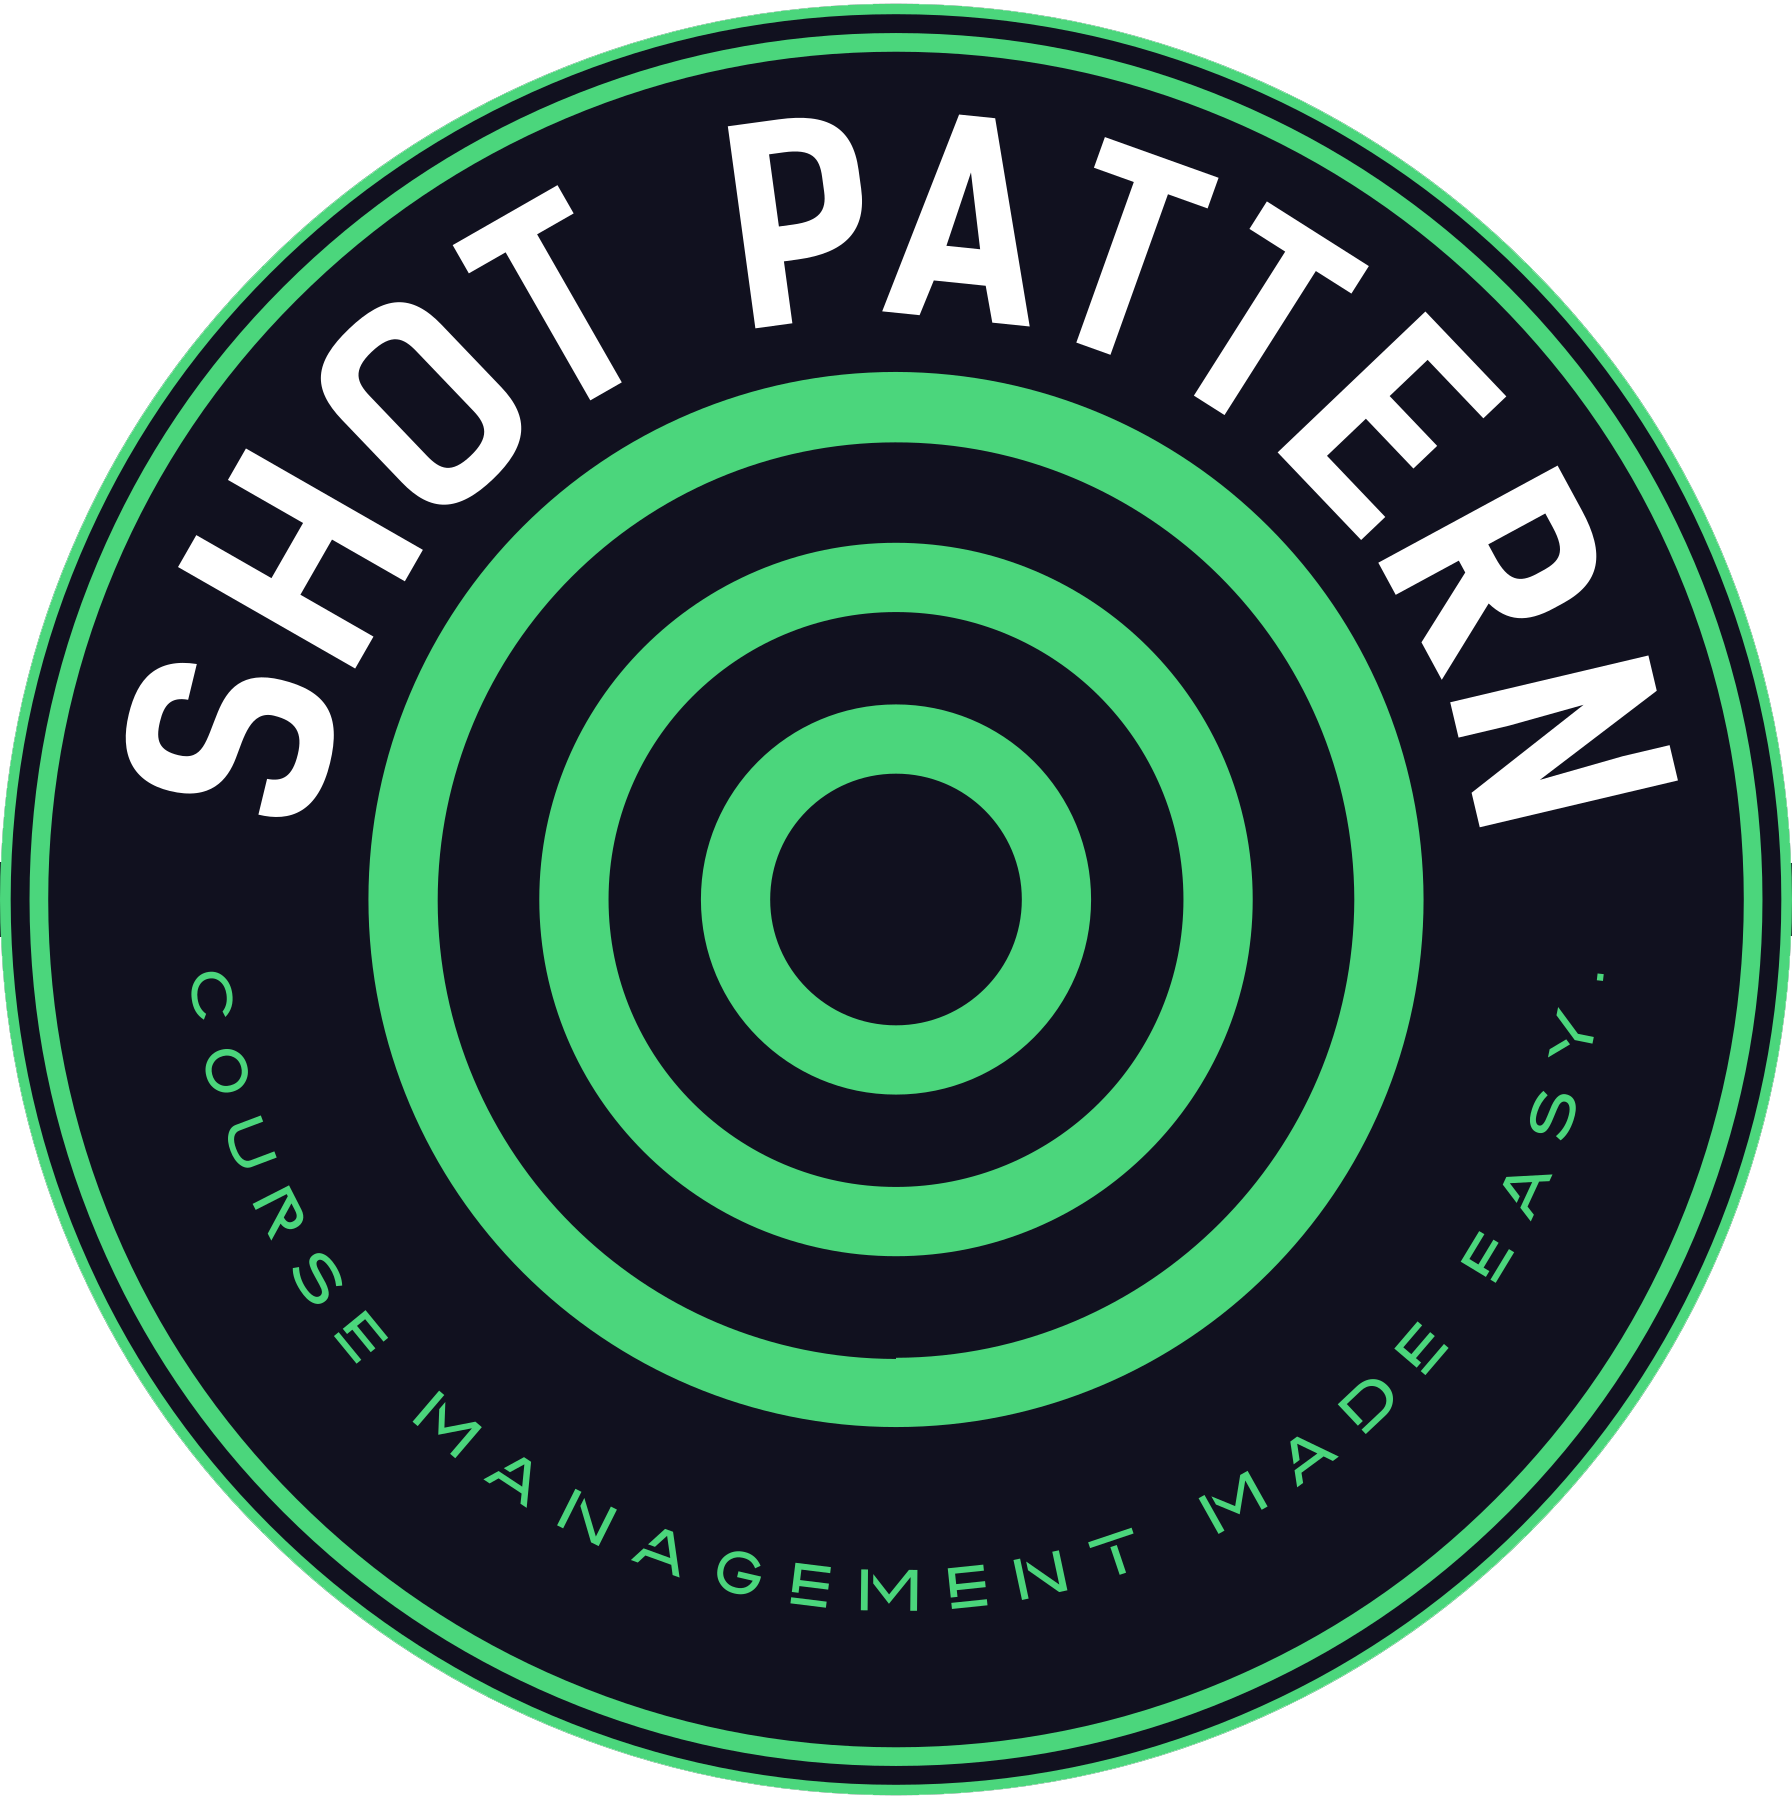 shot pattern logo